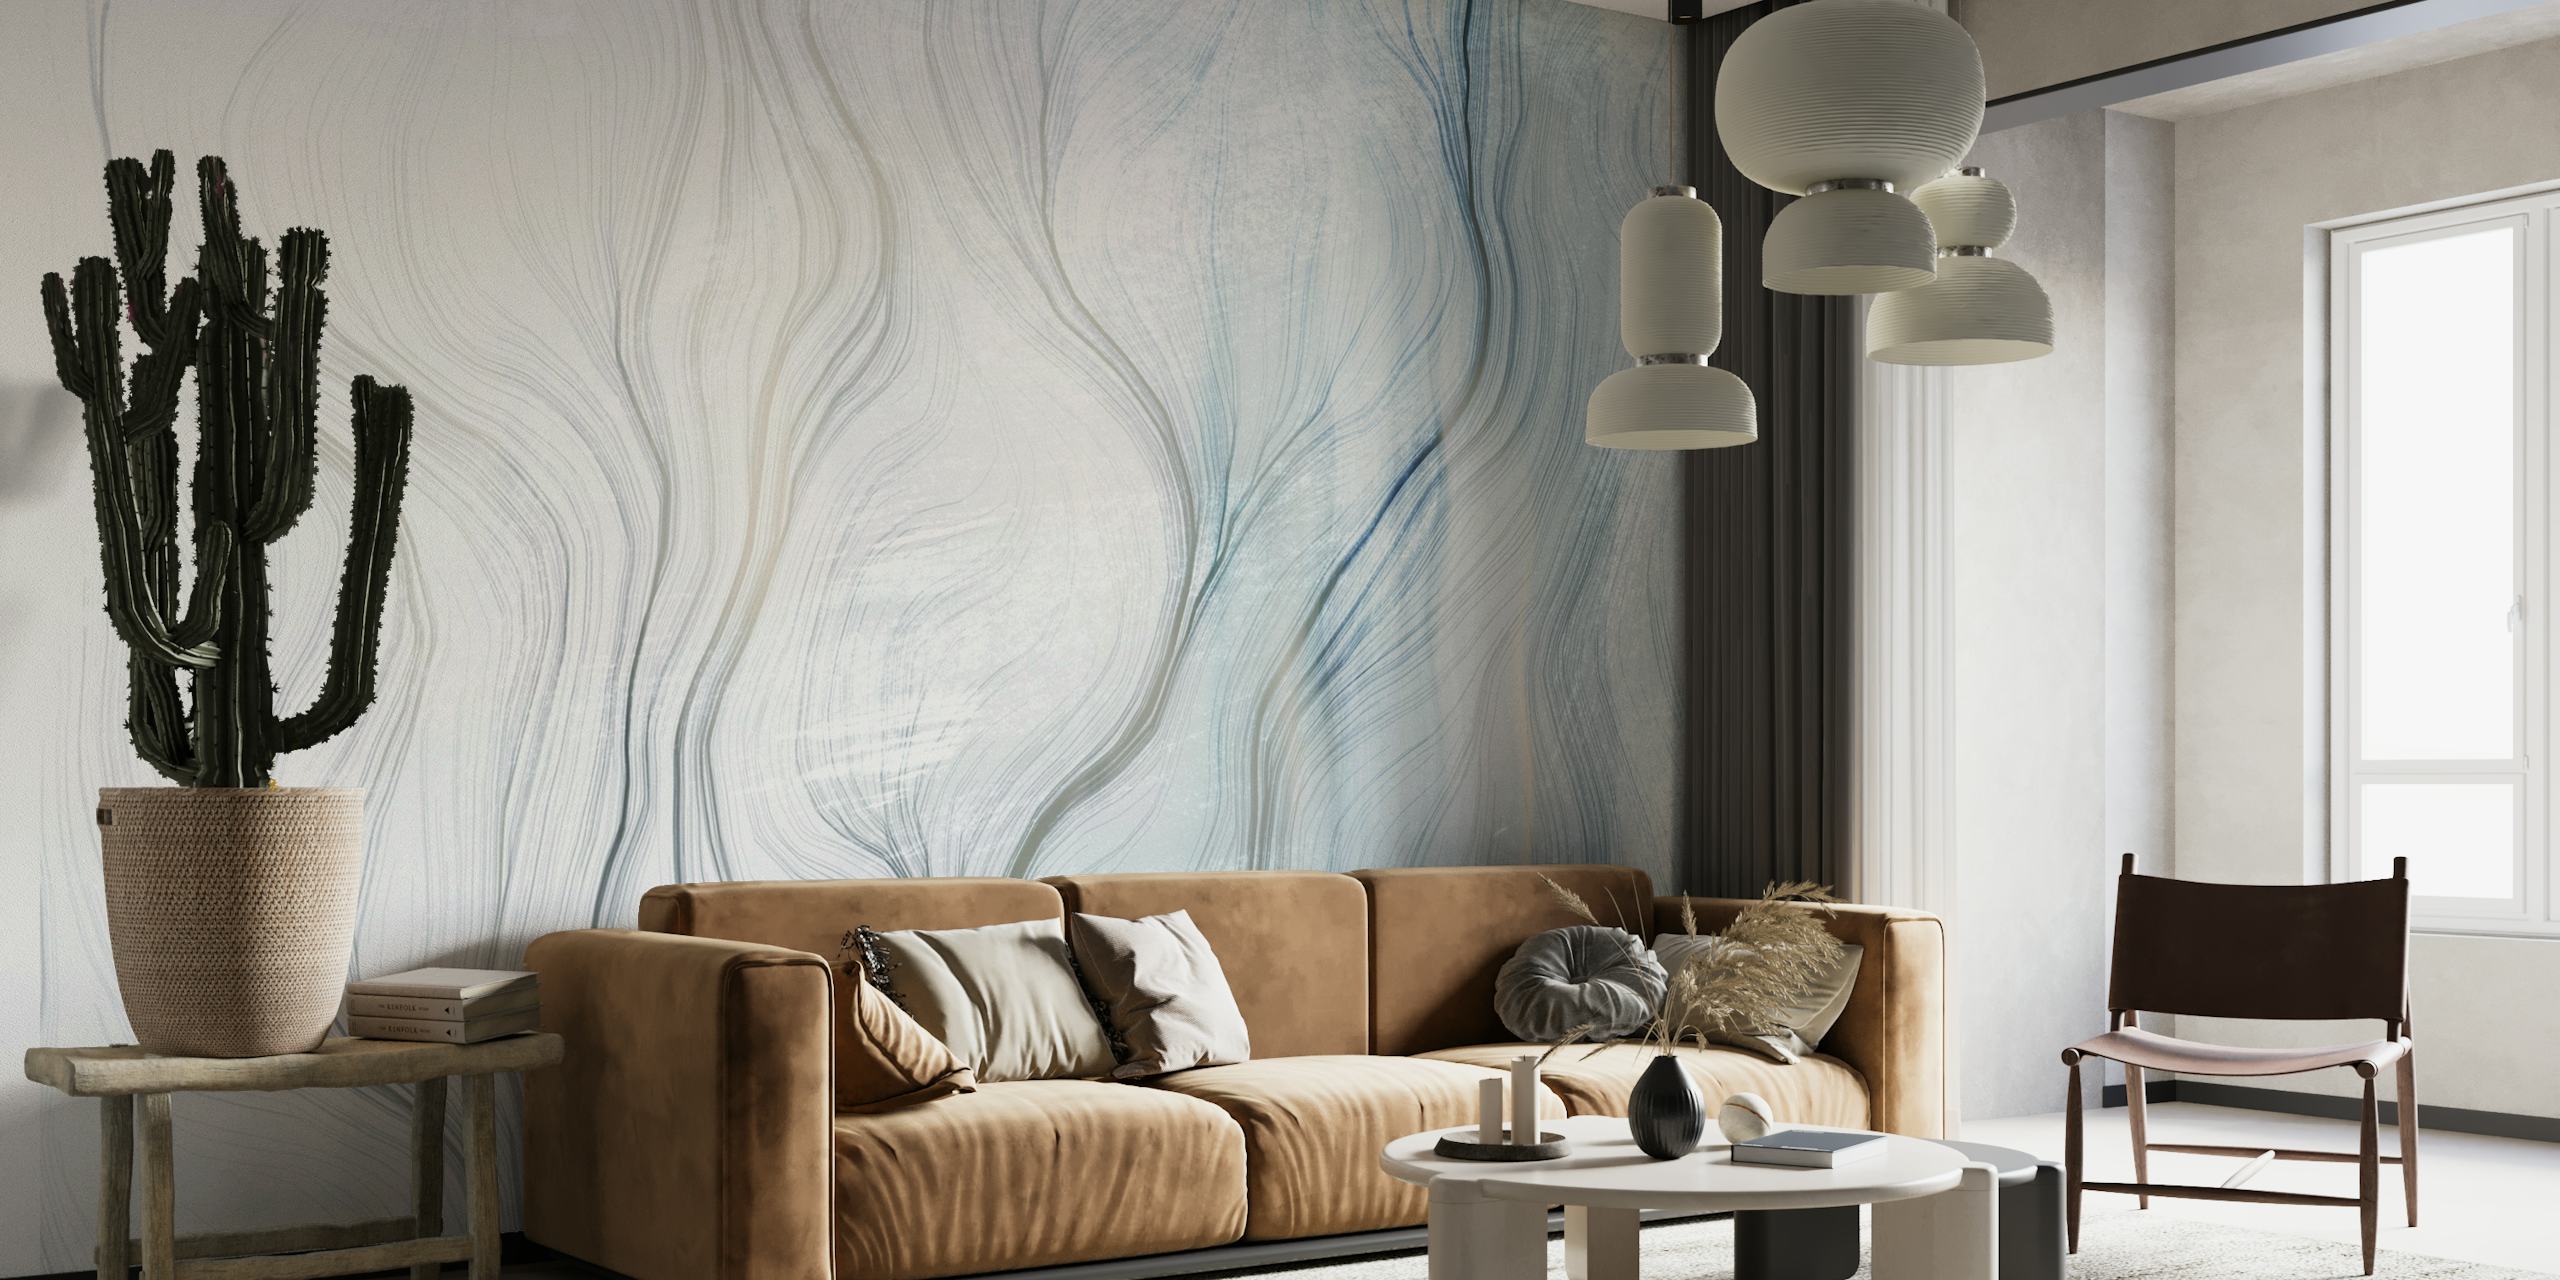 Mural de parede abstrato com curvas suaves e tons gradientes de azul e cinza, criando um ambiente tranquilo